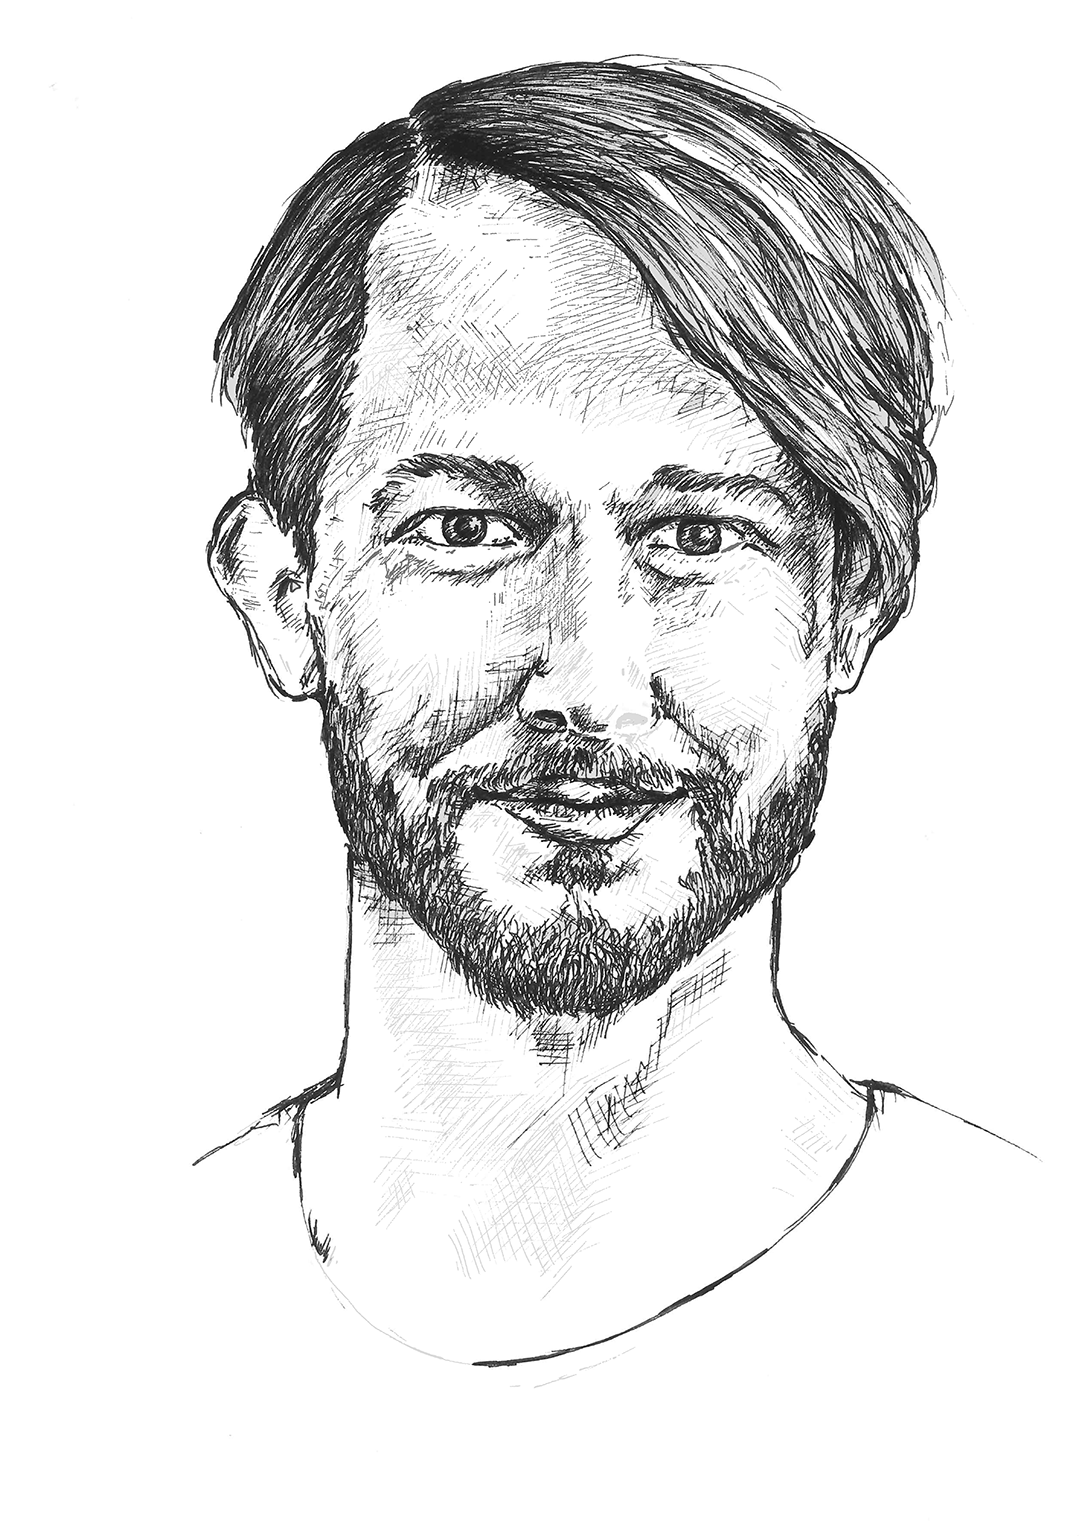 Sander Bakkes, drawing by Gitte van Helden